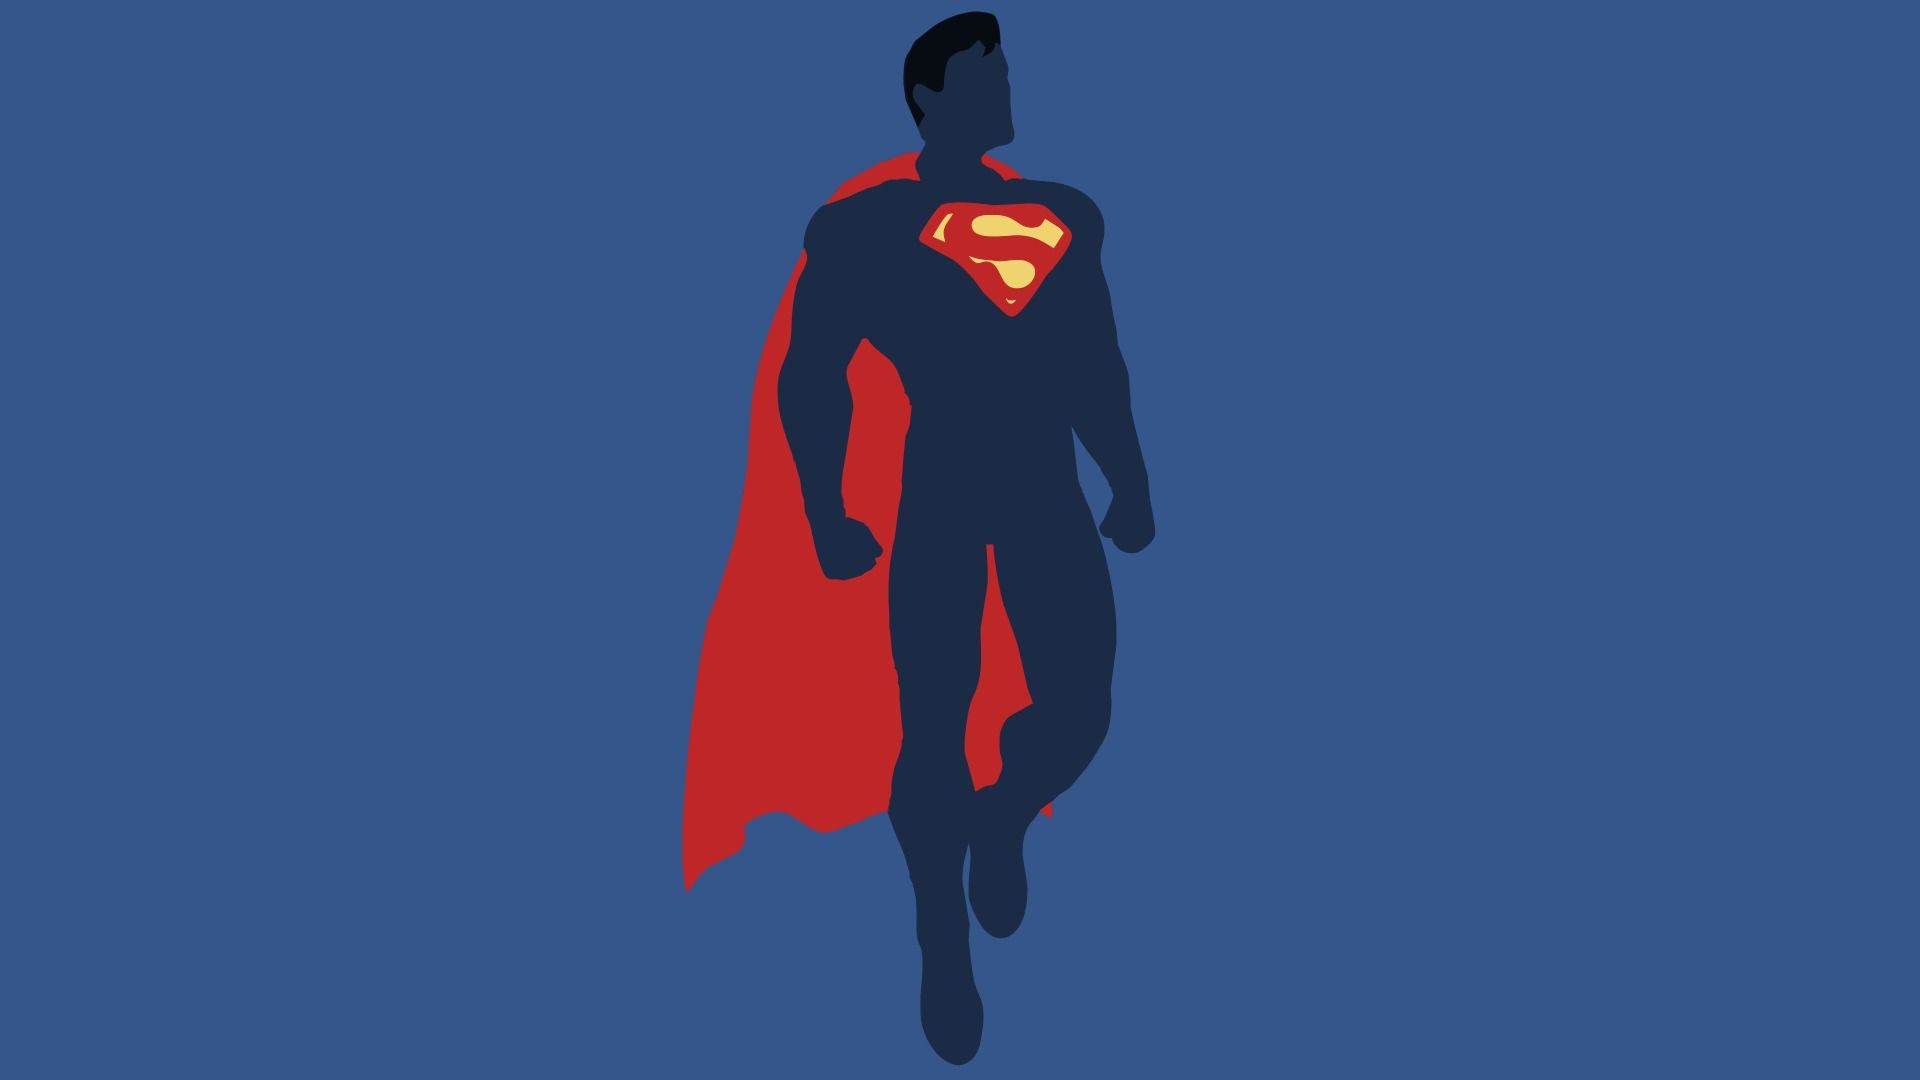 Download Wallpaper 1920x1080 Justice league, Superman, Dc comics